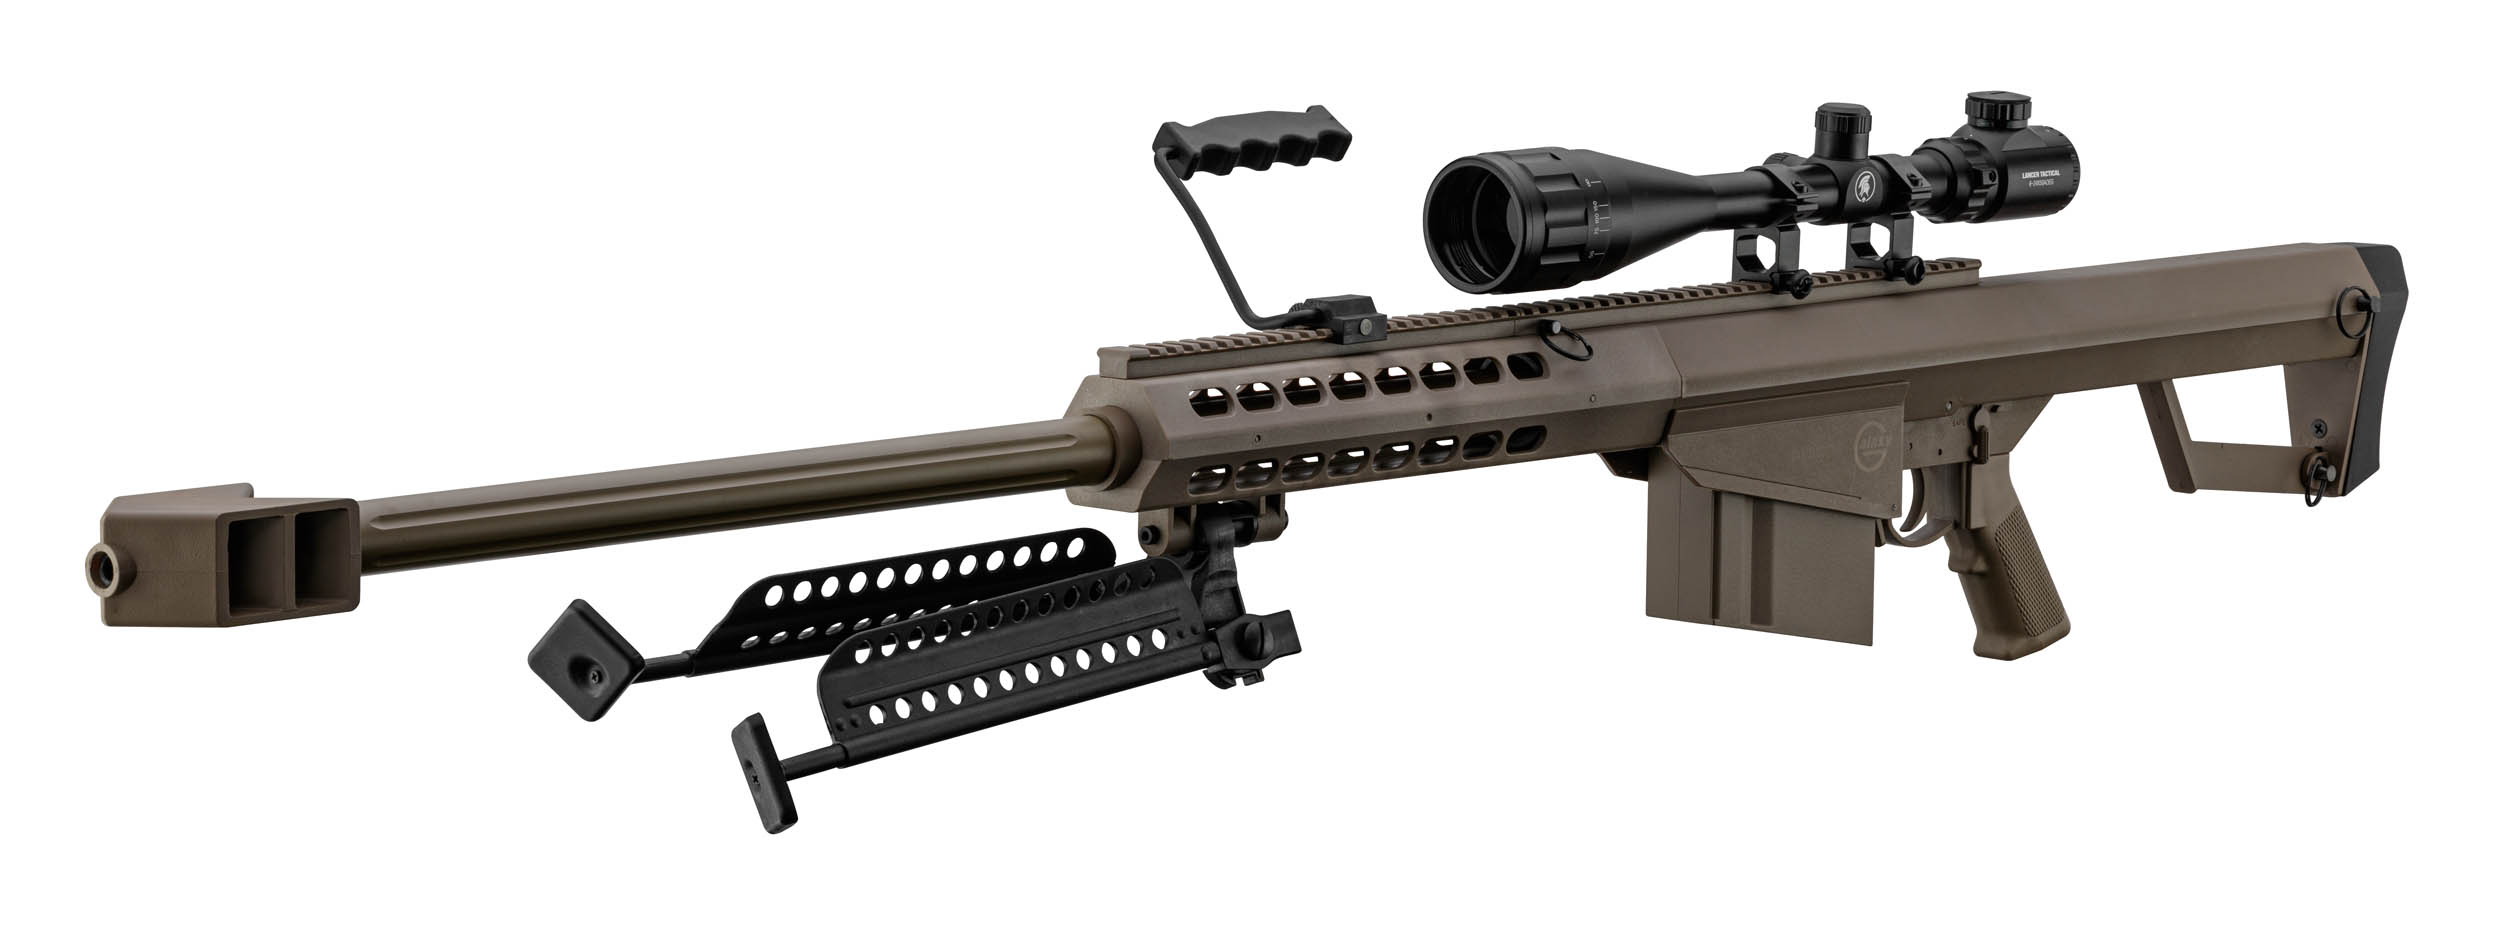 PCKLR3052-08 Pack Sniper LT-20 tan M82 1,5J + lunette + bi-pied + poignée - PCKLR3052